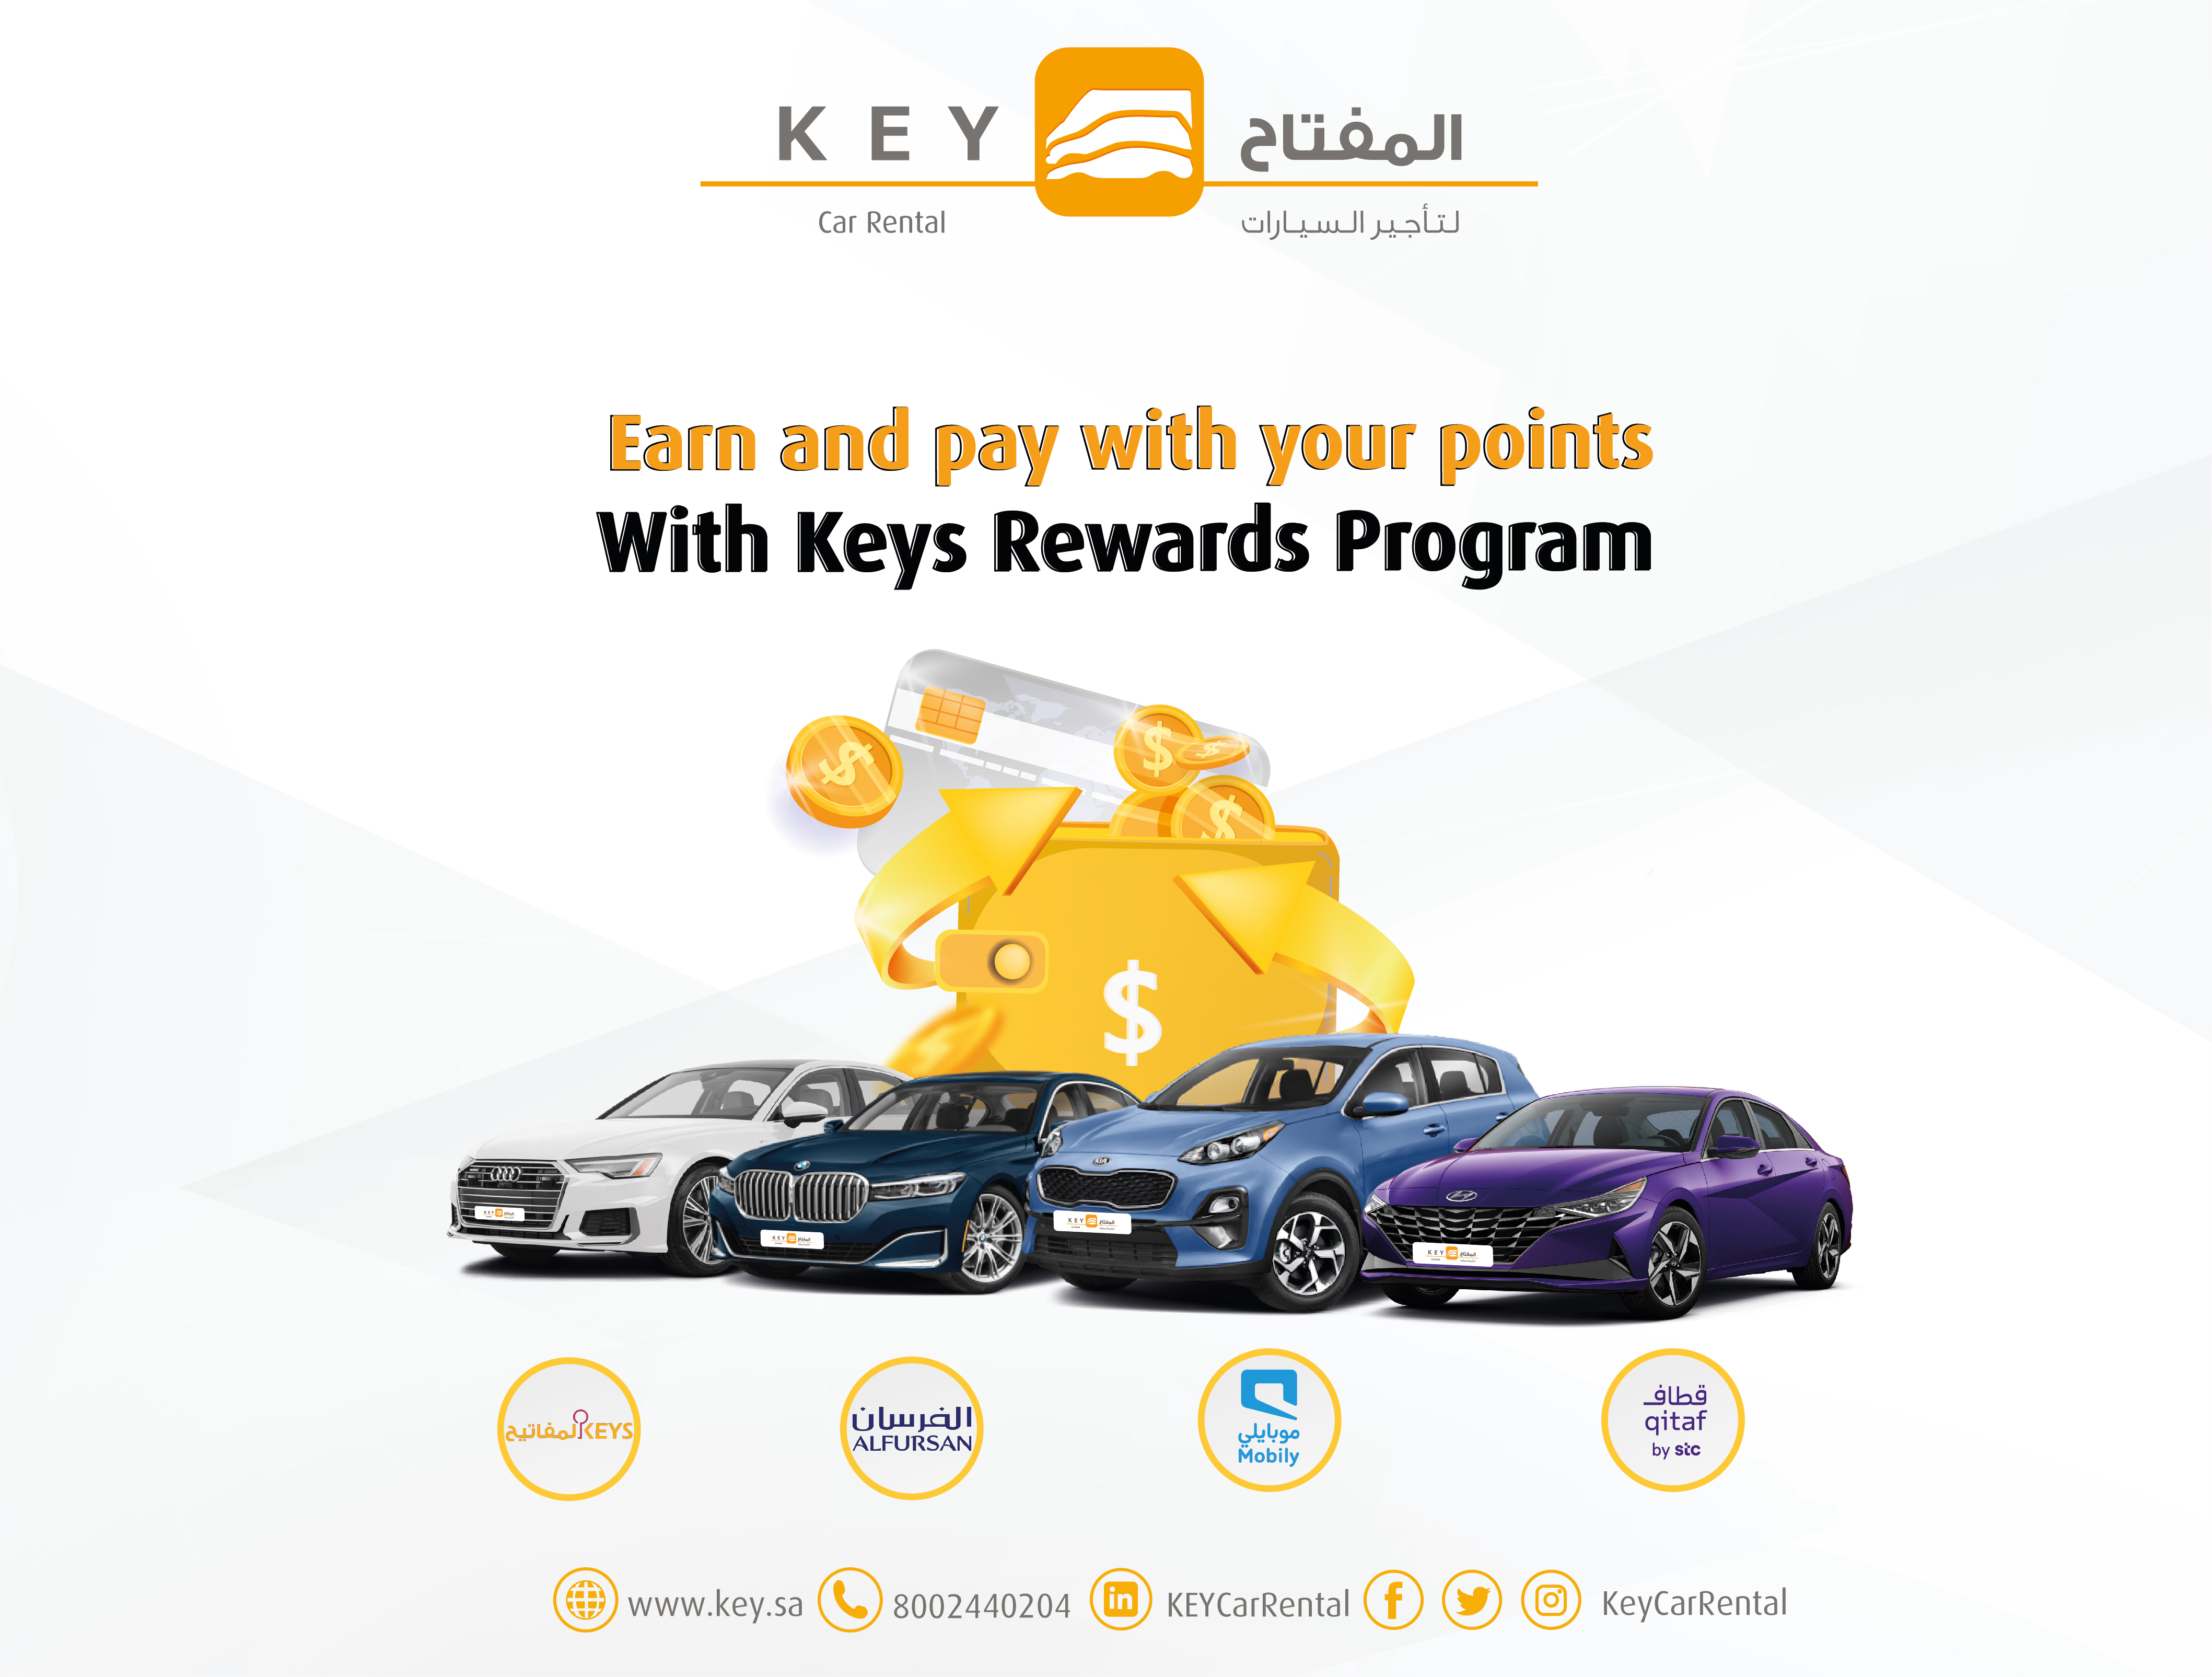 8_Keys loyalty program_E.jpg img-responsive